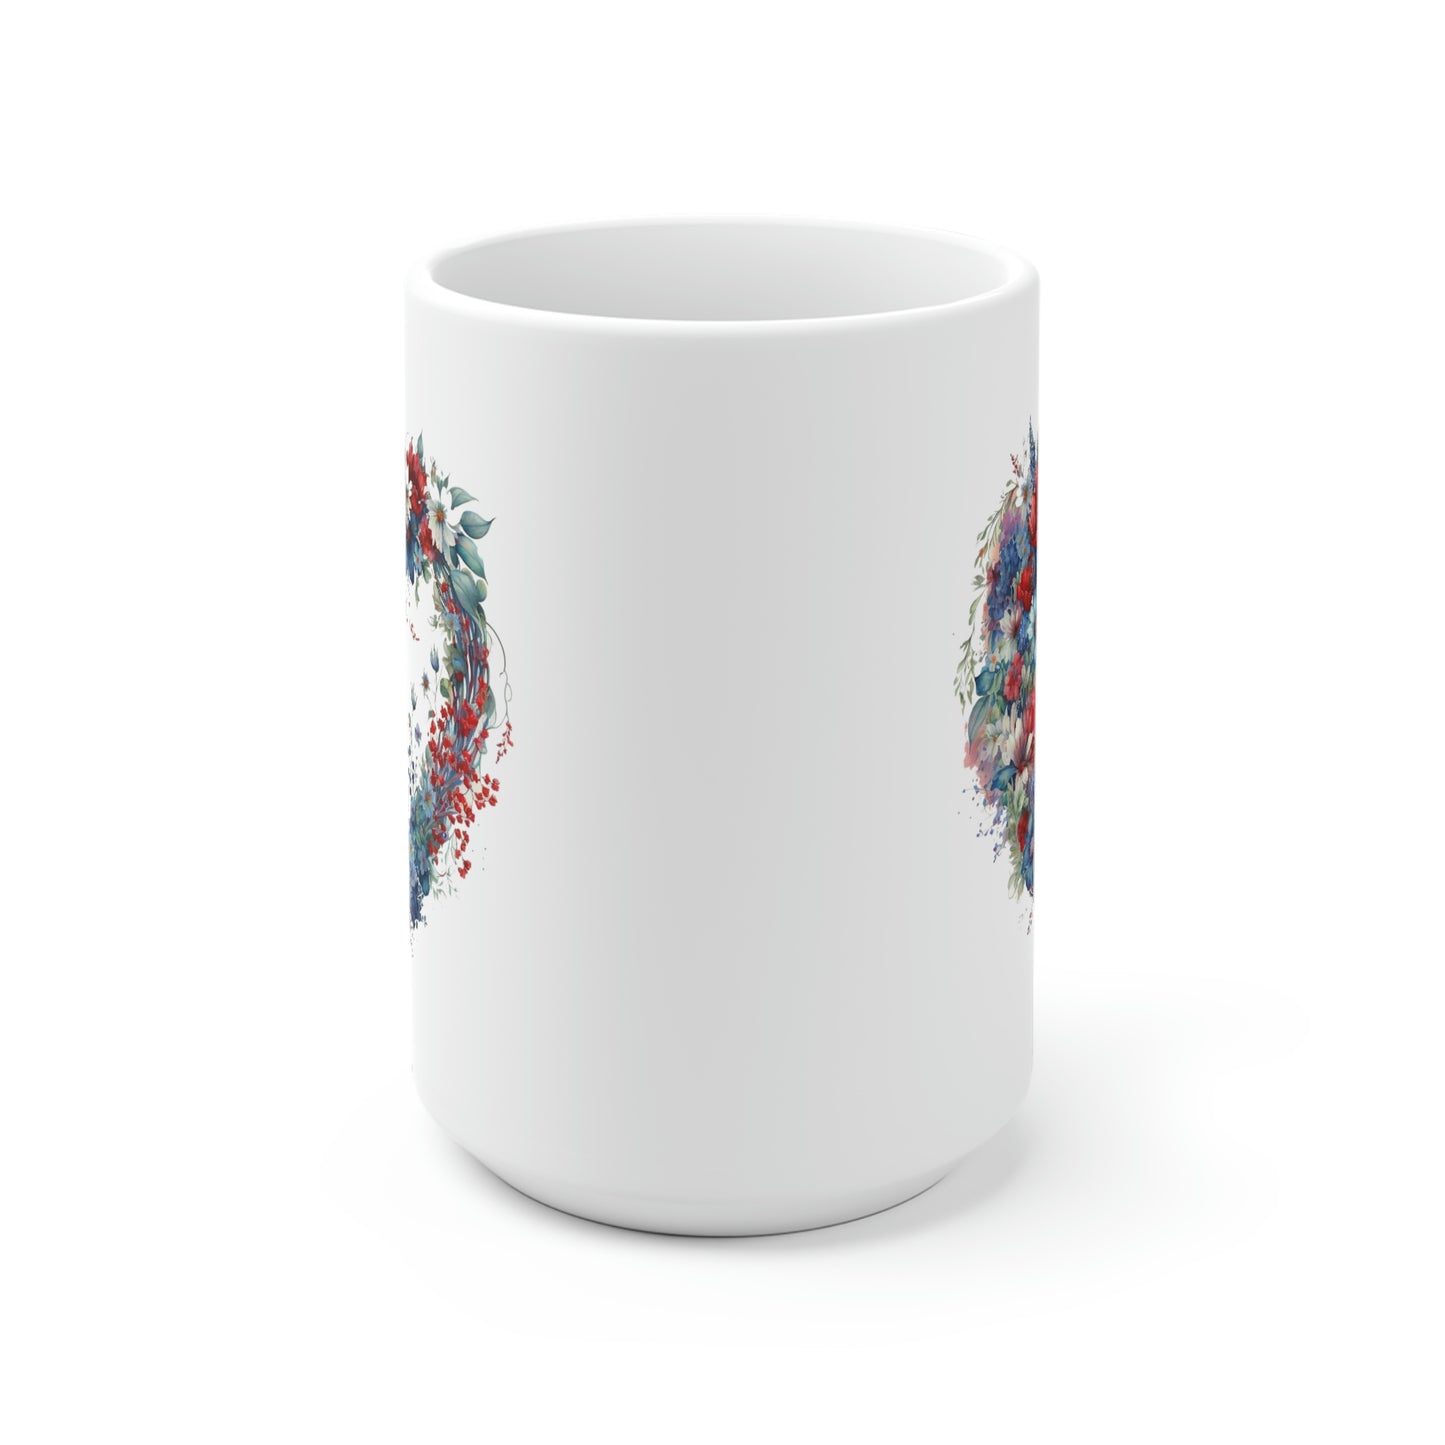 Flower Heart White Ceramic Mug